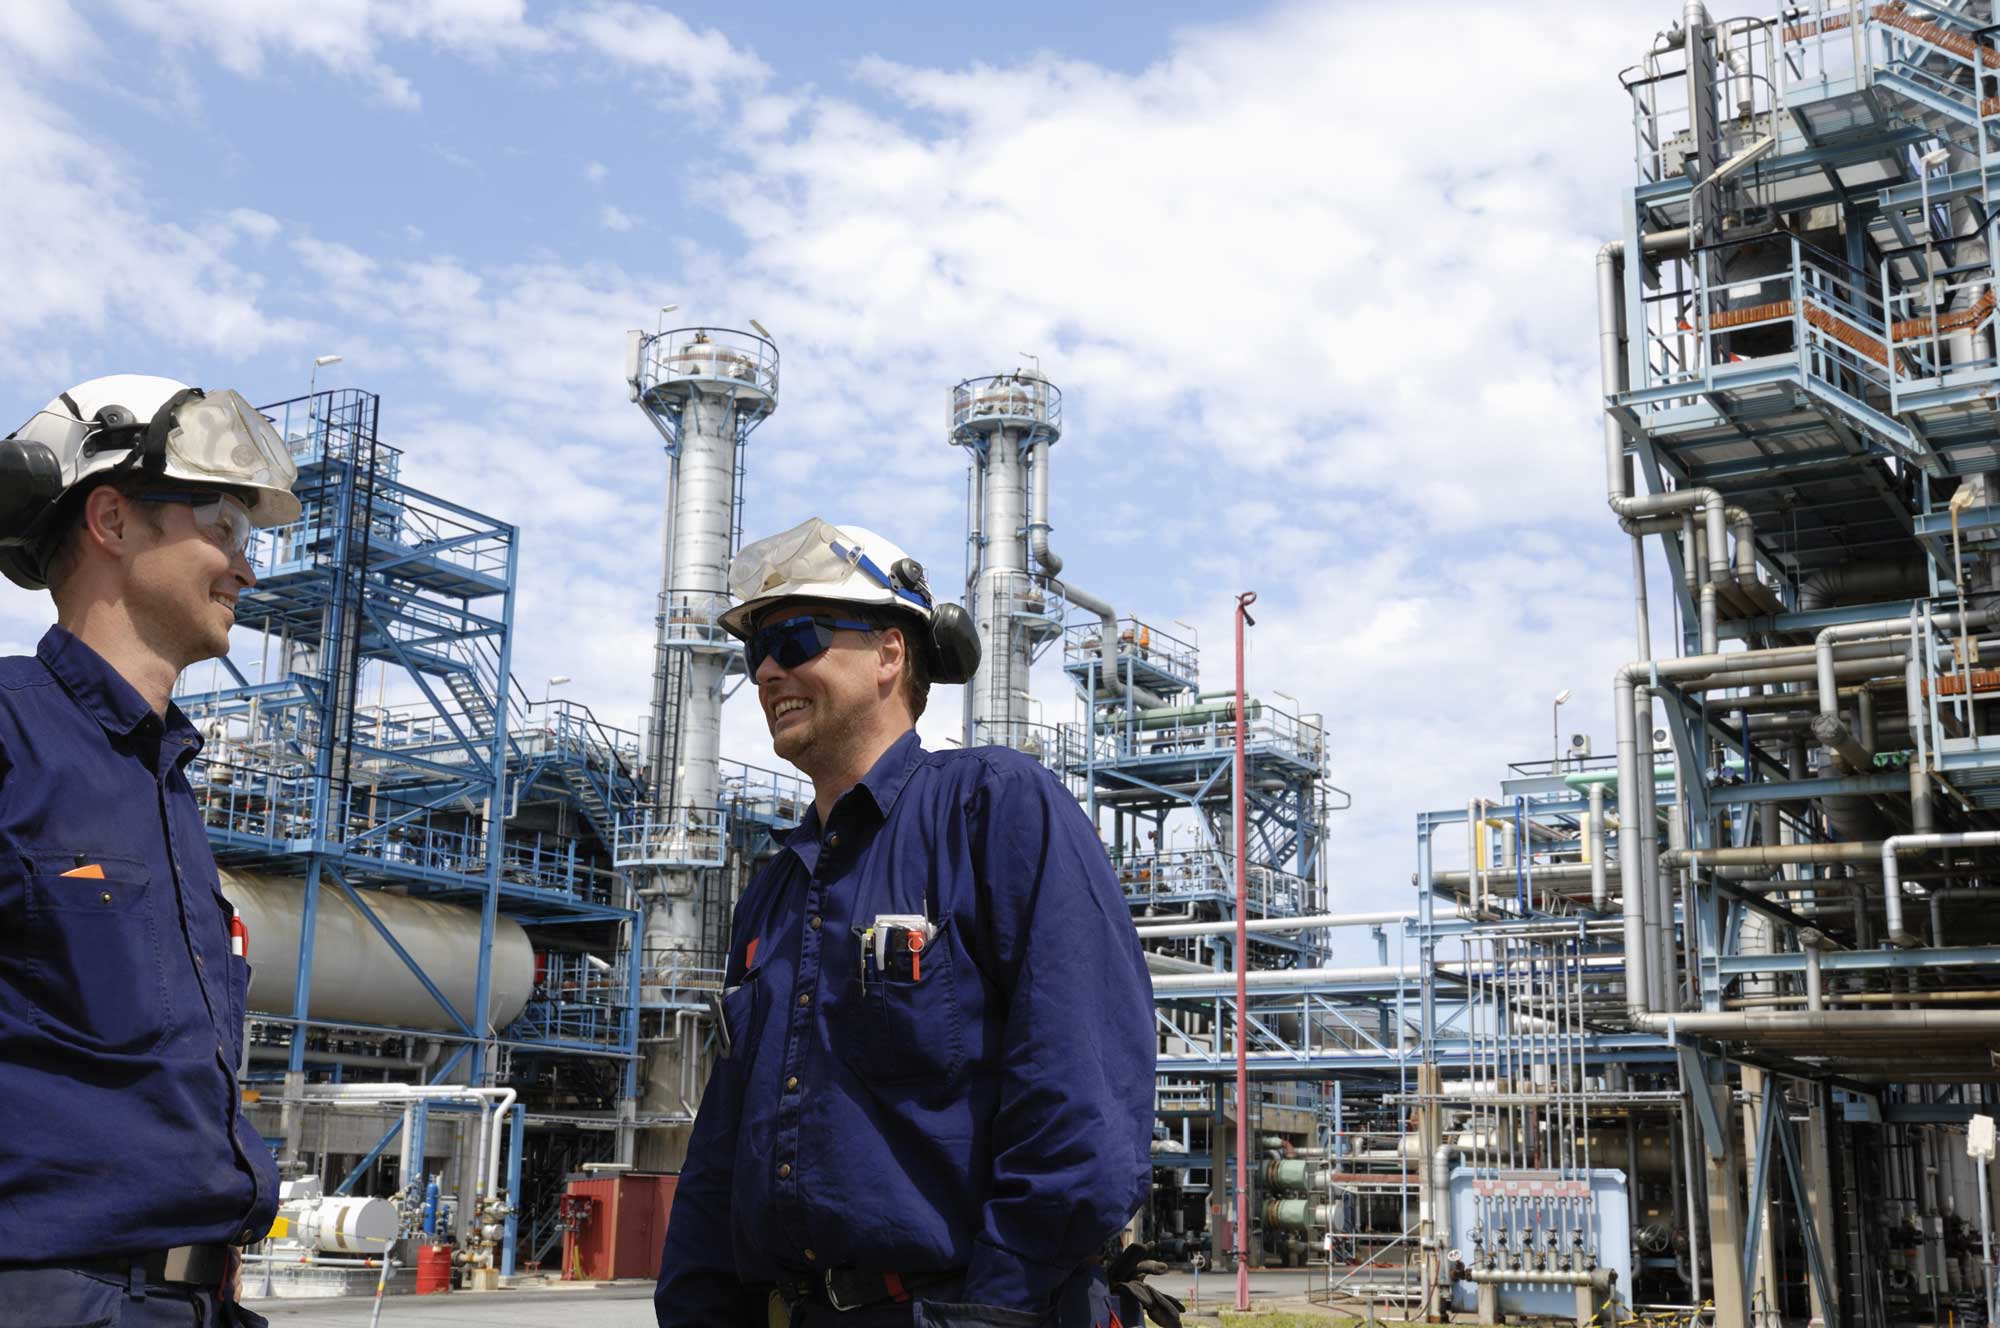 Chemical plant operators